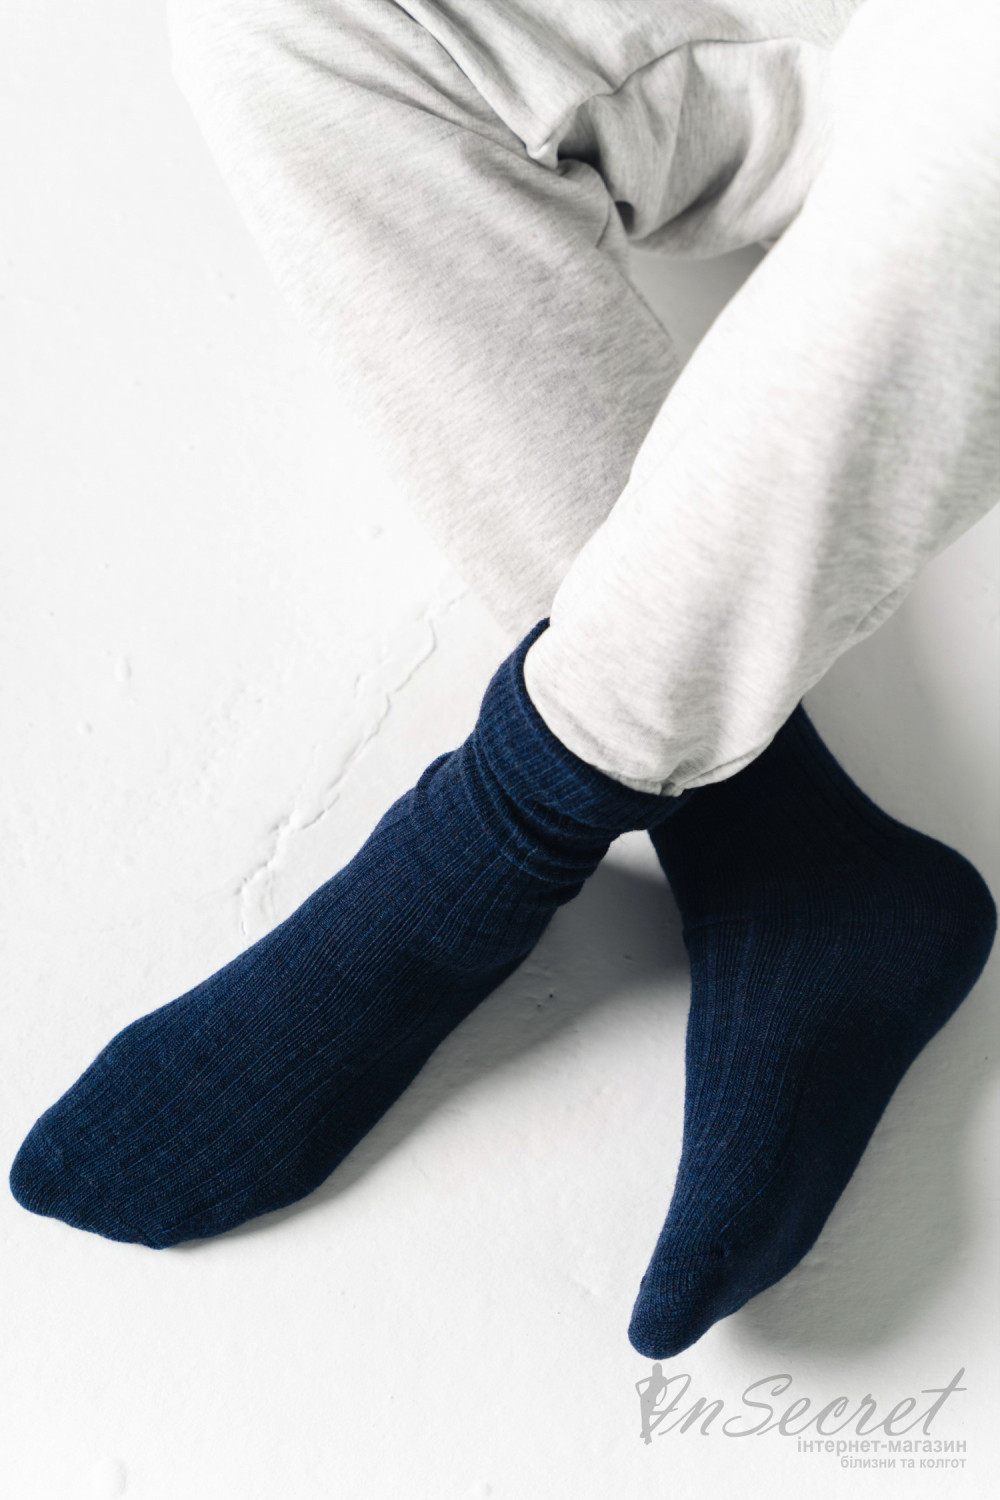 Шкарпетки жіночі з вовною альпаки STEVEN 044 Alpaka Wool